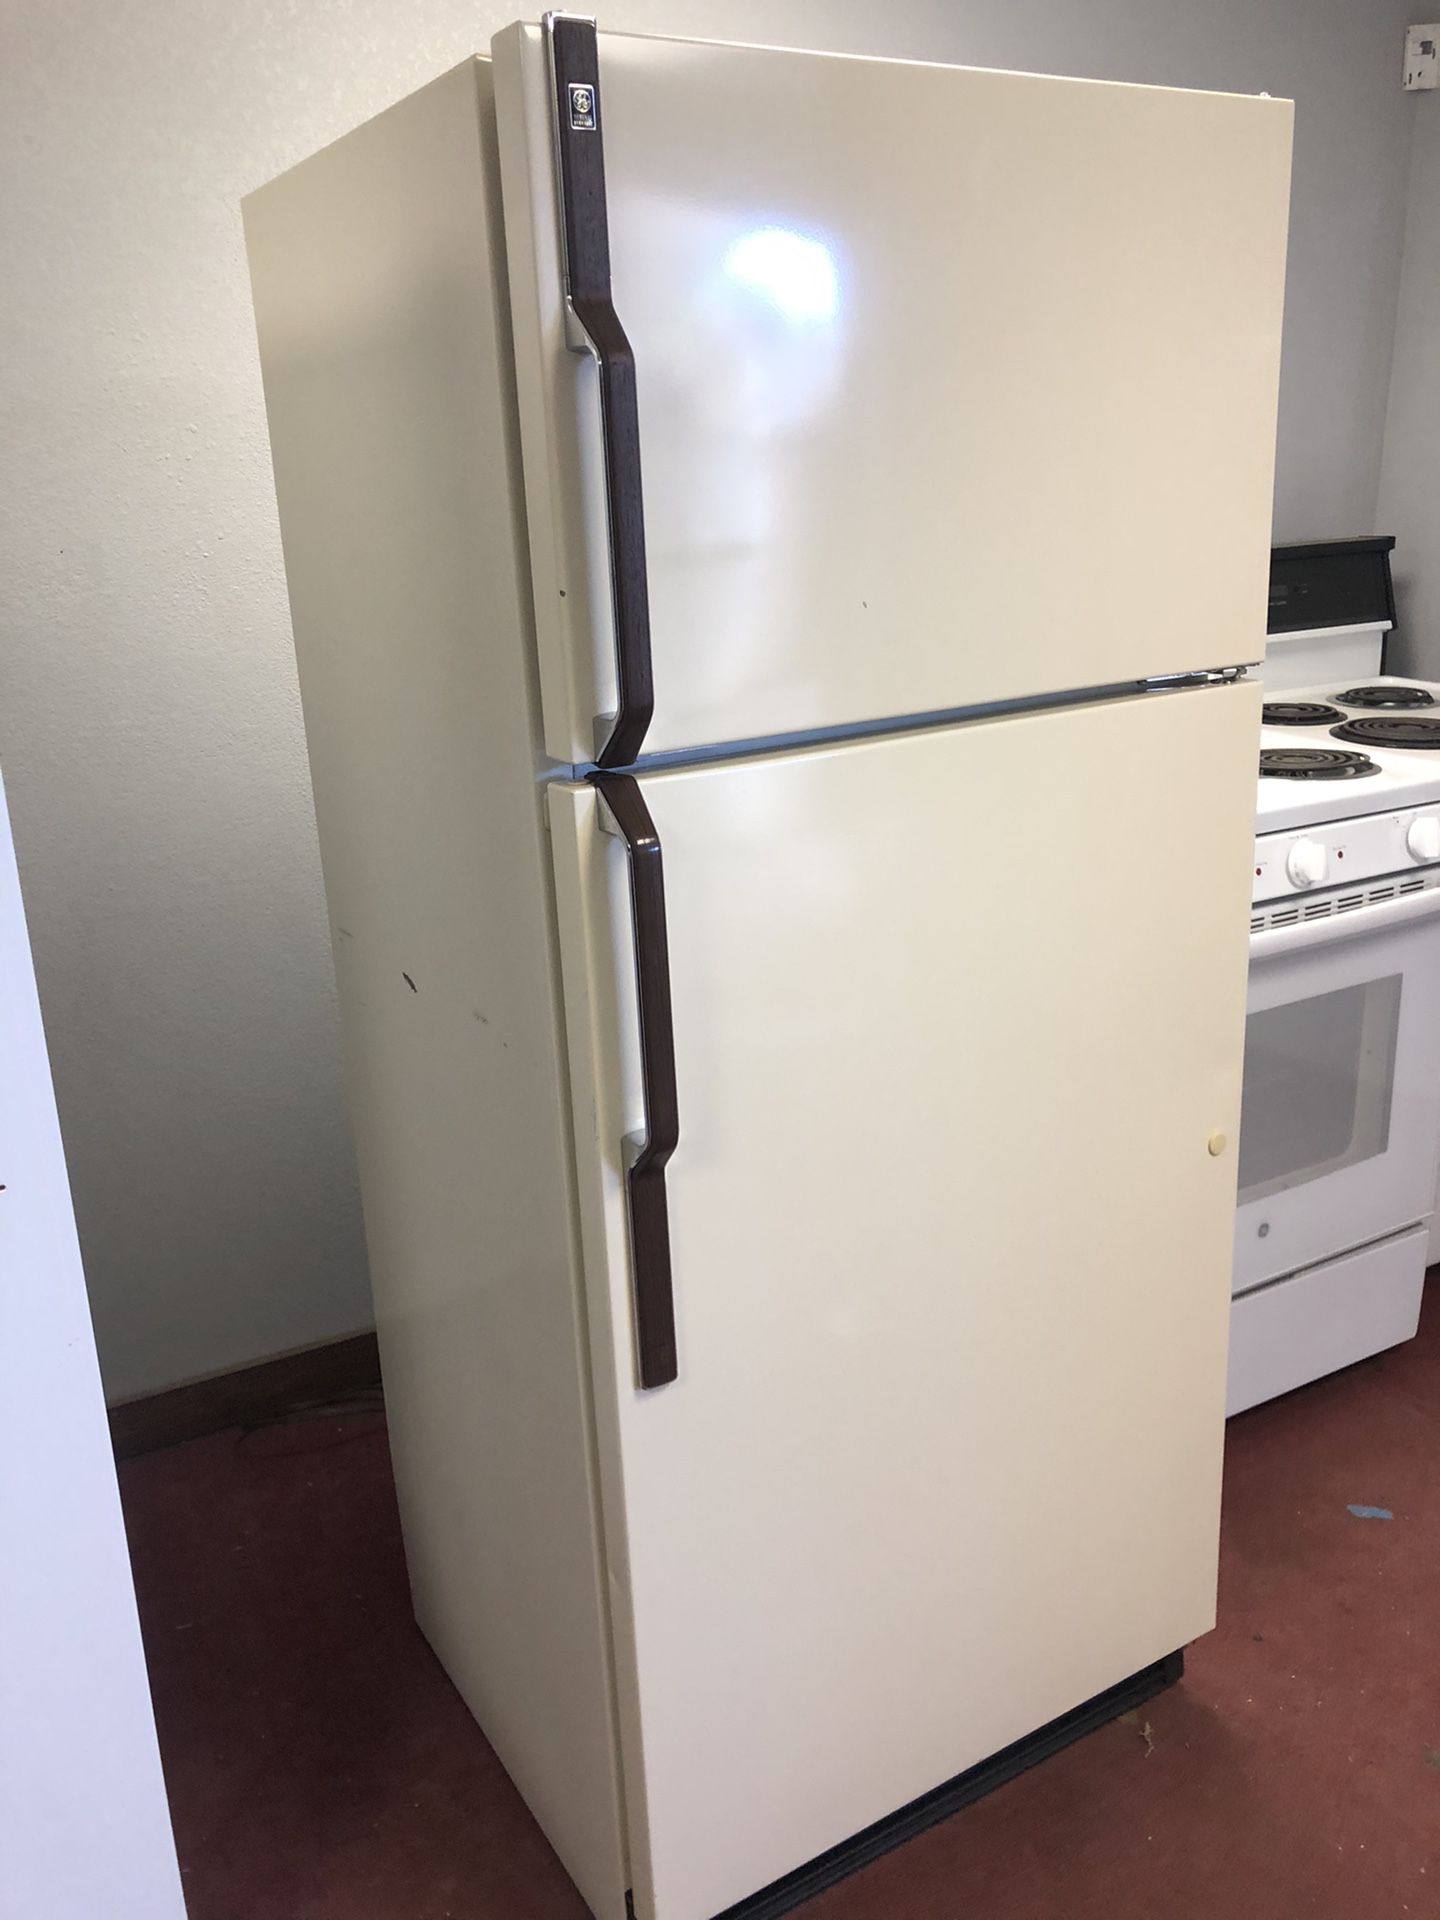 Refrigerator G E almond color for $135